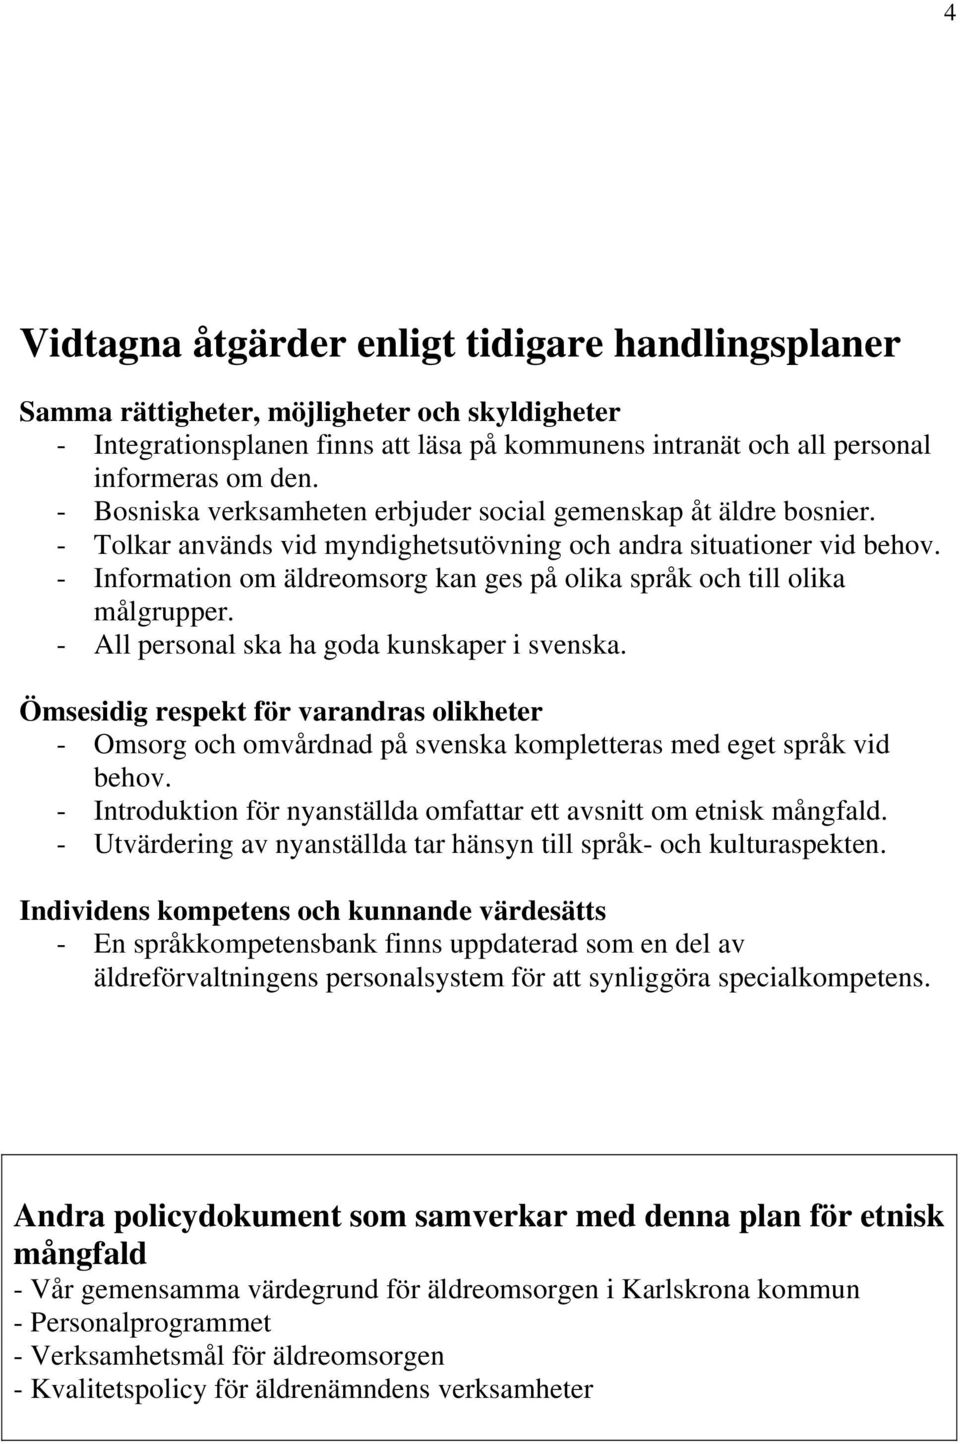 - Information om äldreomsorg kan ges på olika språk och till olika målgrupper. - All personal ska ha goda kunskaper i svenska.